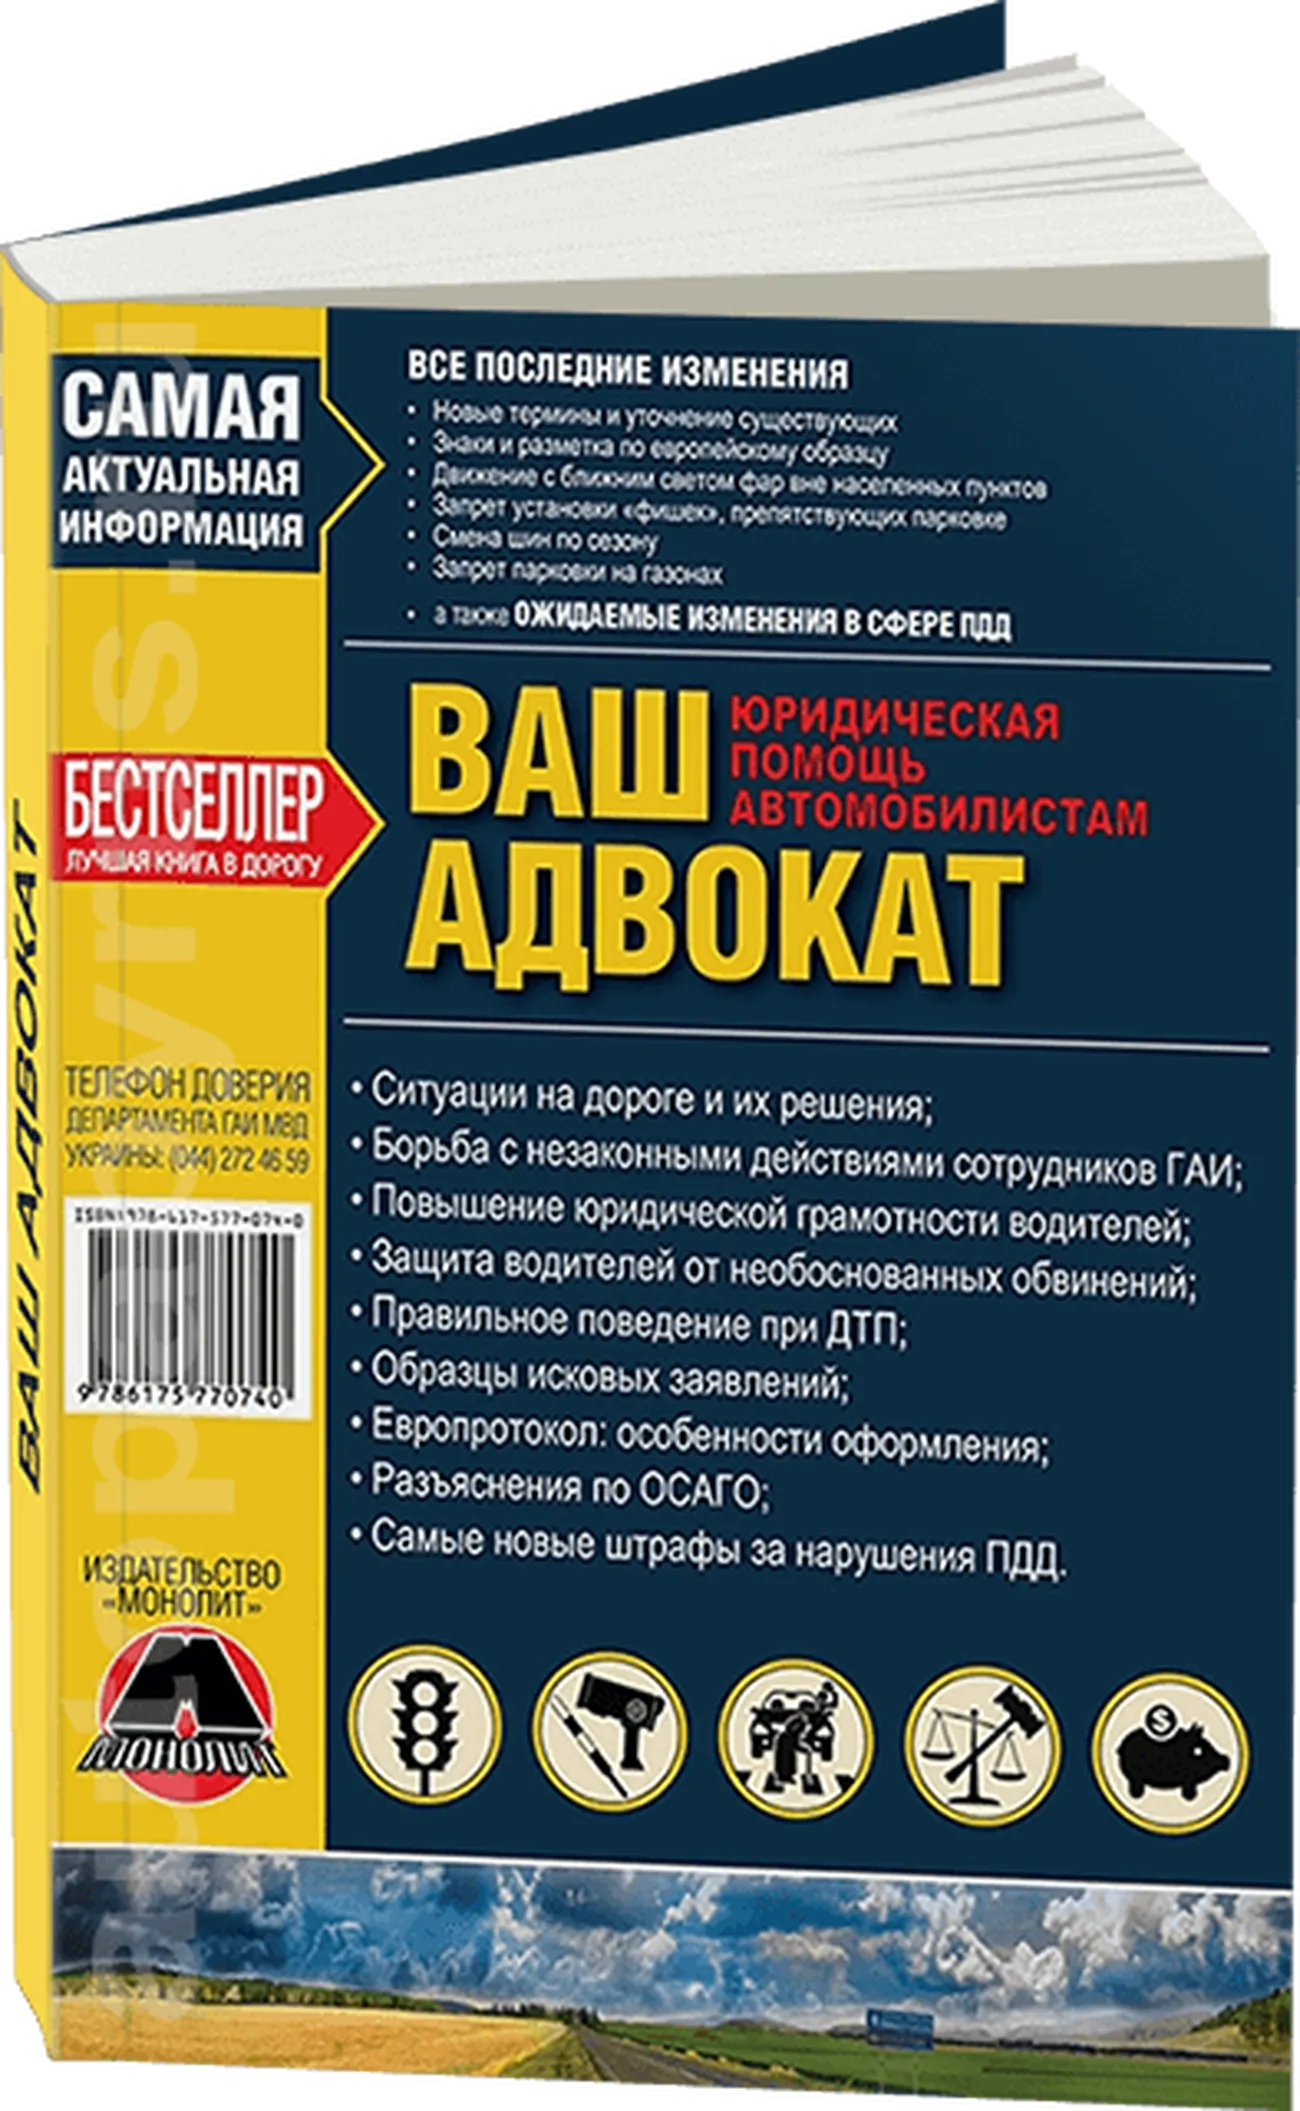 Книга: Ваш Адвокат. Юридическая помощь на дорогах Украины | Монолит